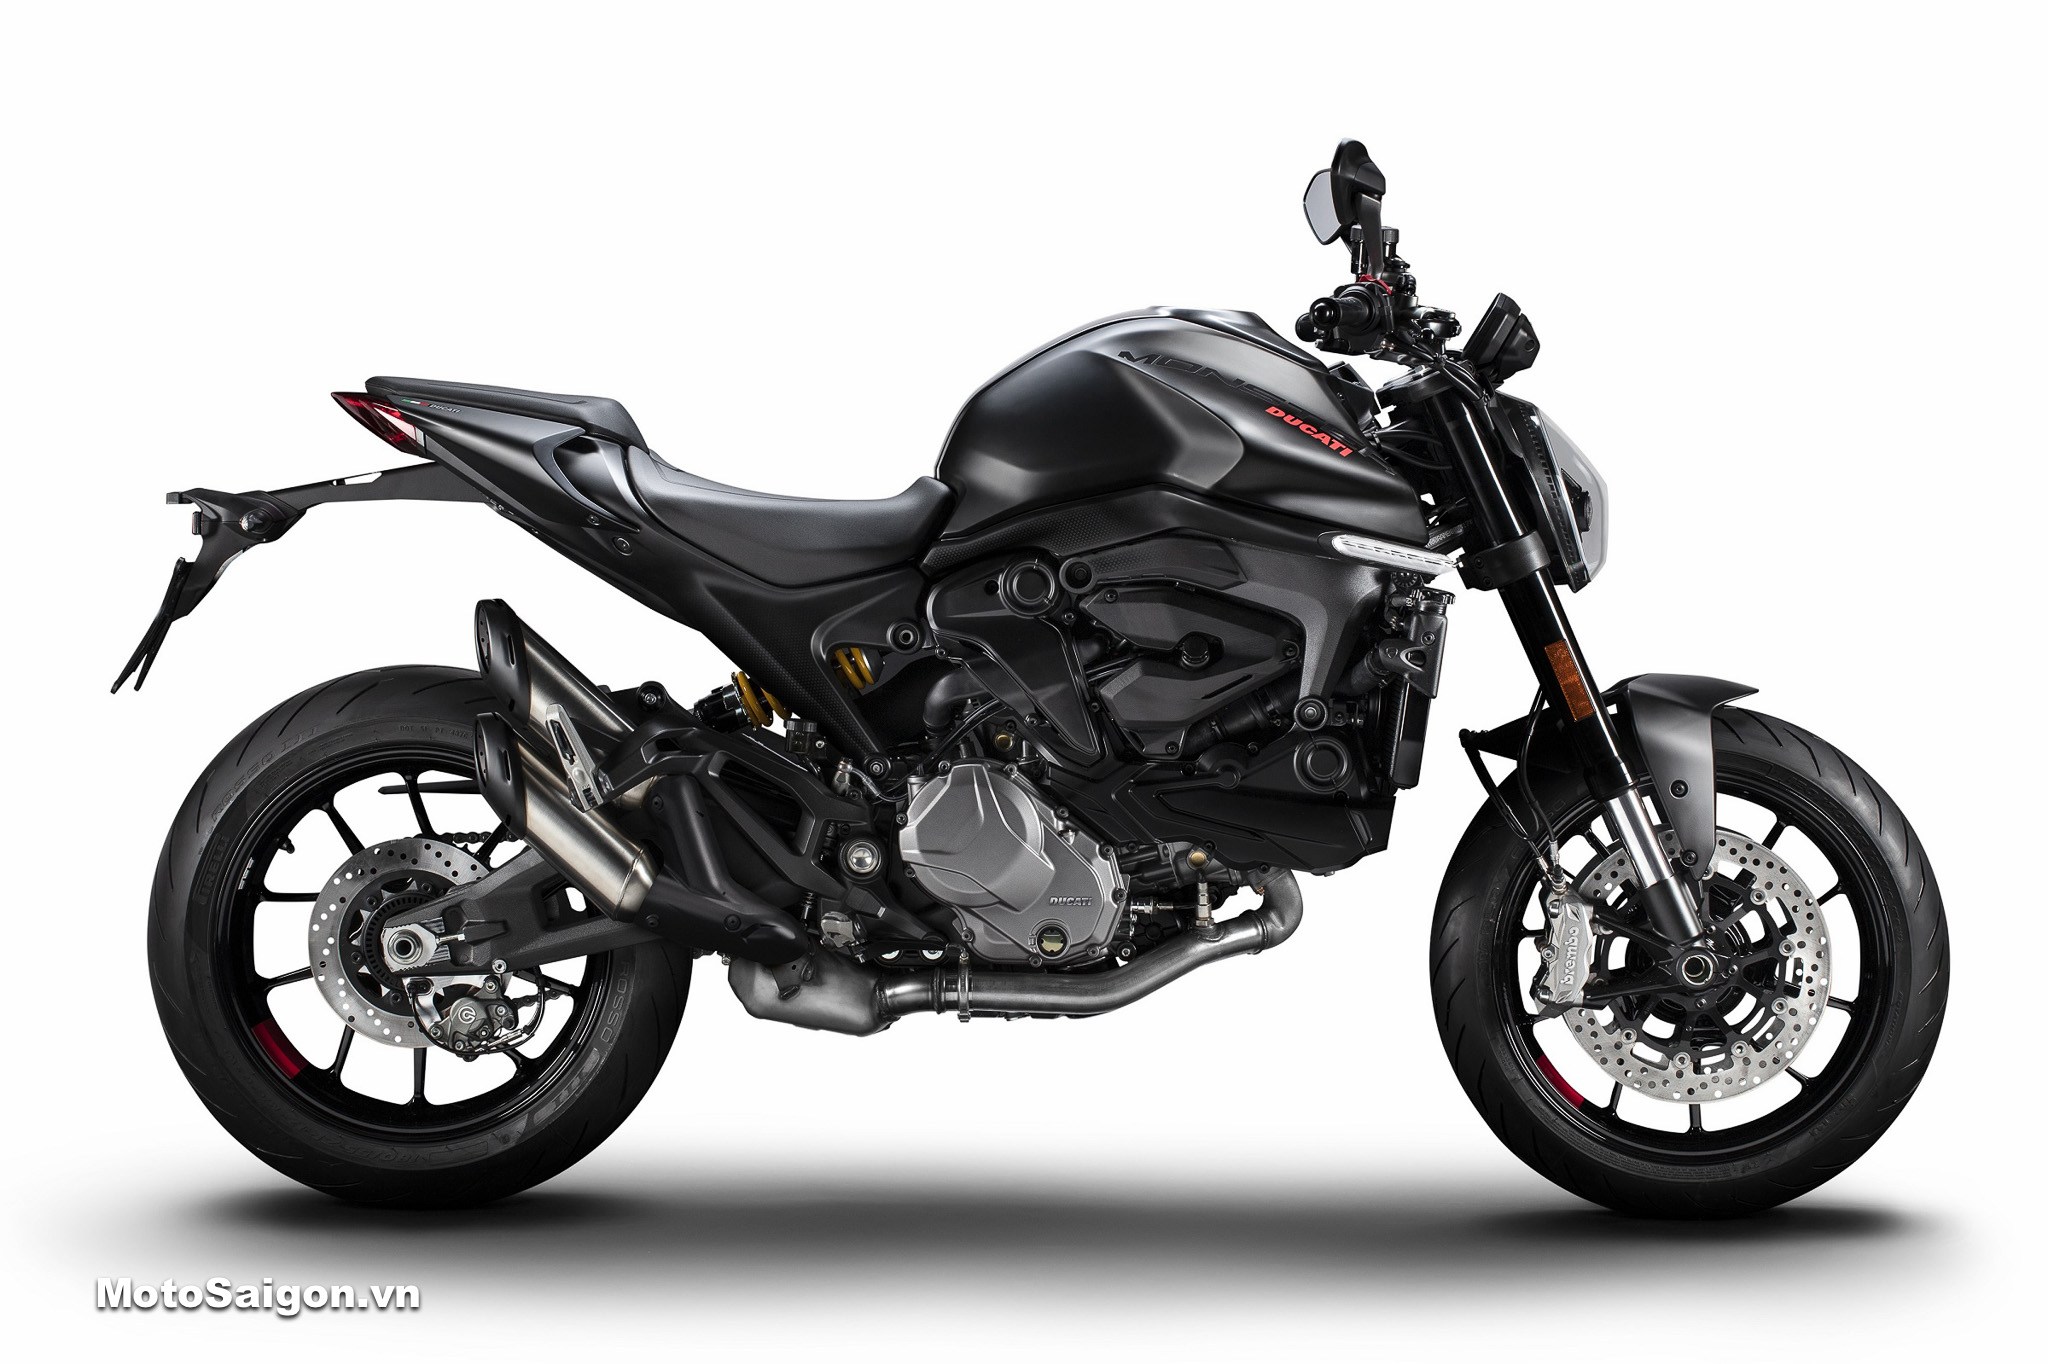 Sốc với siêu ưu đãi giá xe Ducati Monster 937 đến 62 triệu đồng